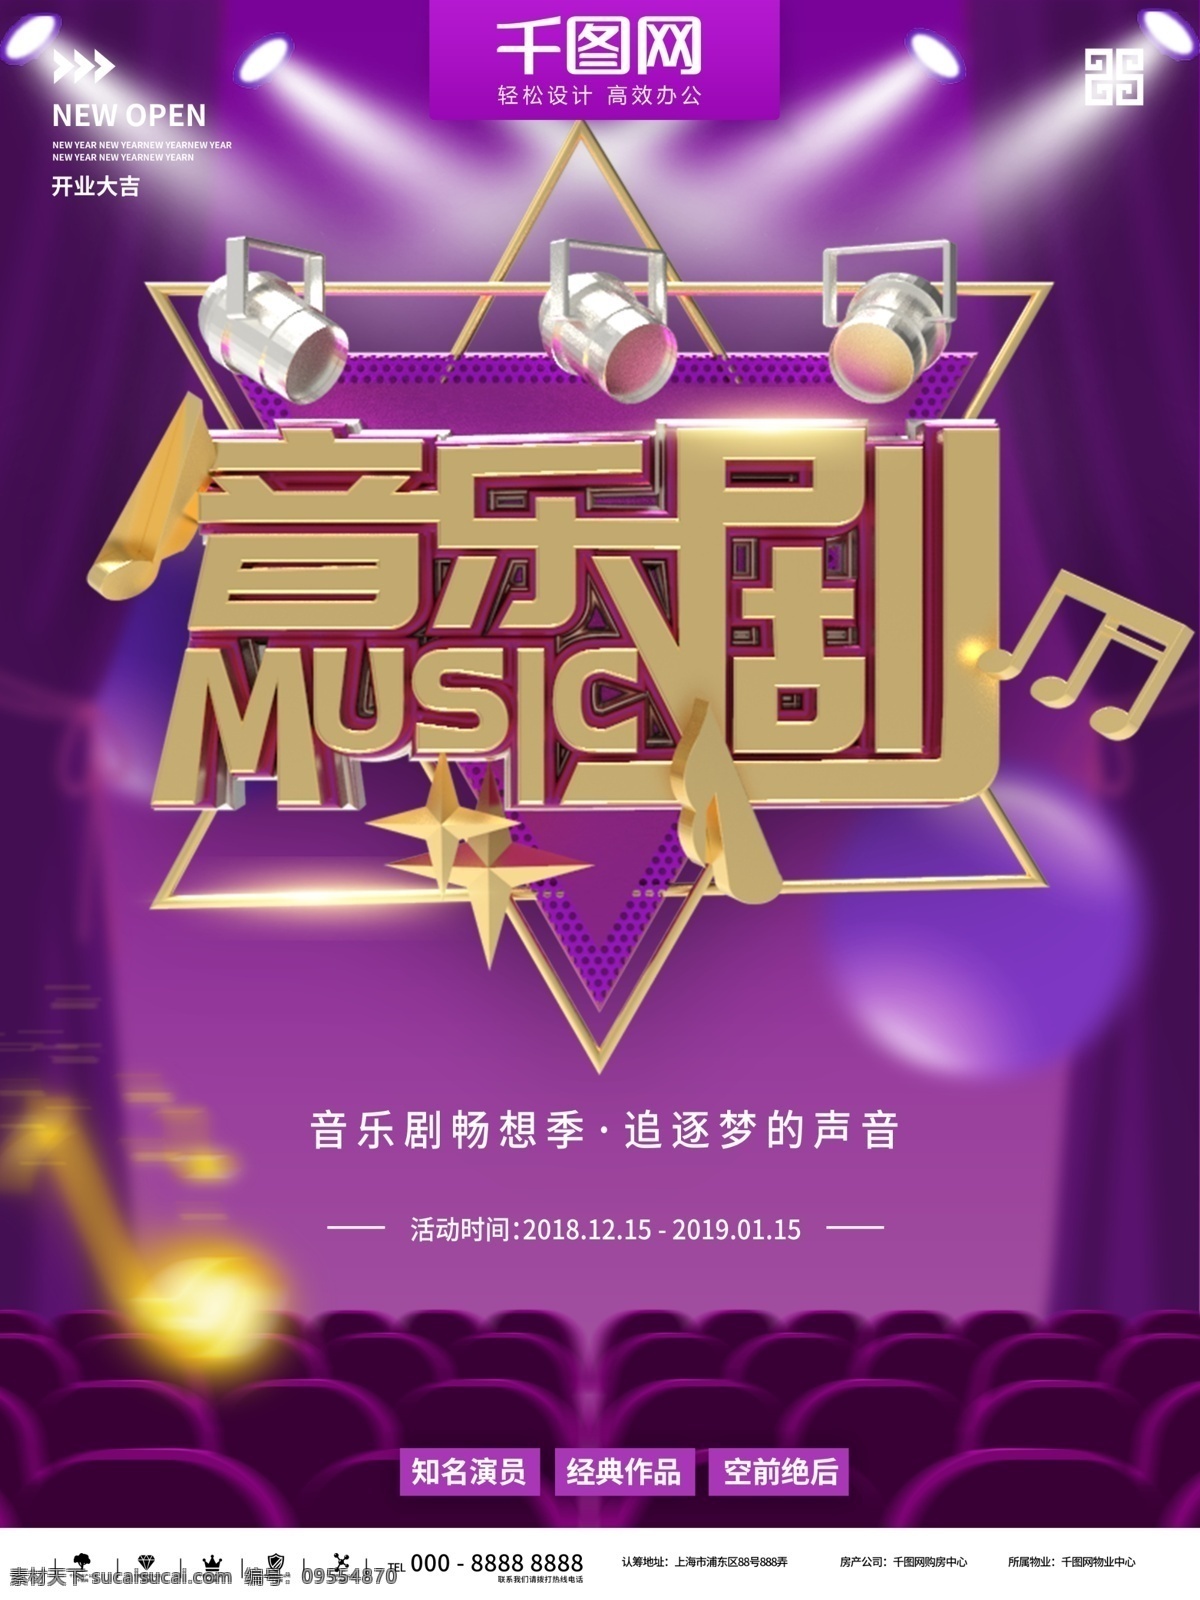 紫色 时尚 大气 音乐剧 宣传 商业 海报 金色 音乐 舞台 简约 演出 表演 年终 活动 比赛 展示 梦想 2019